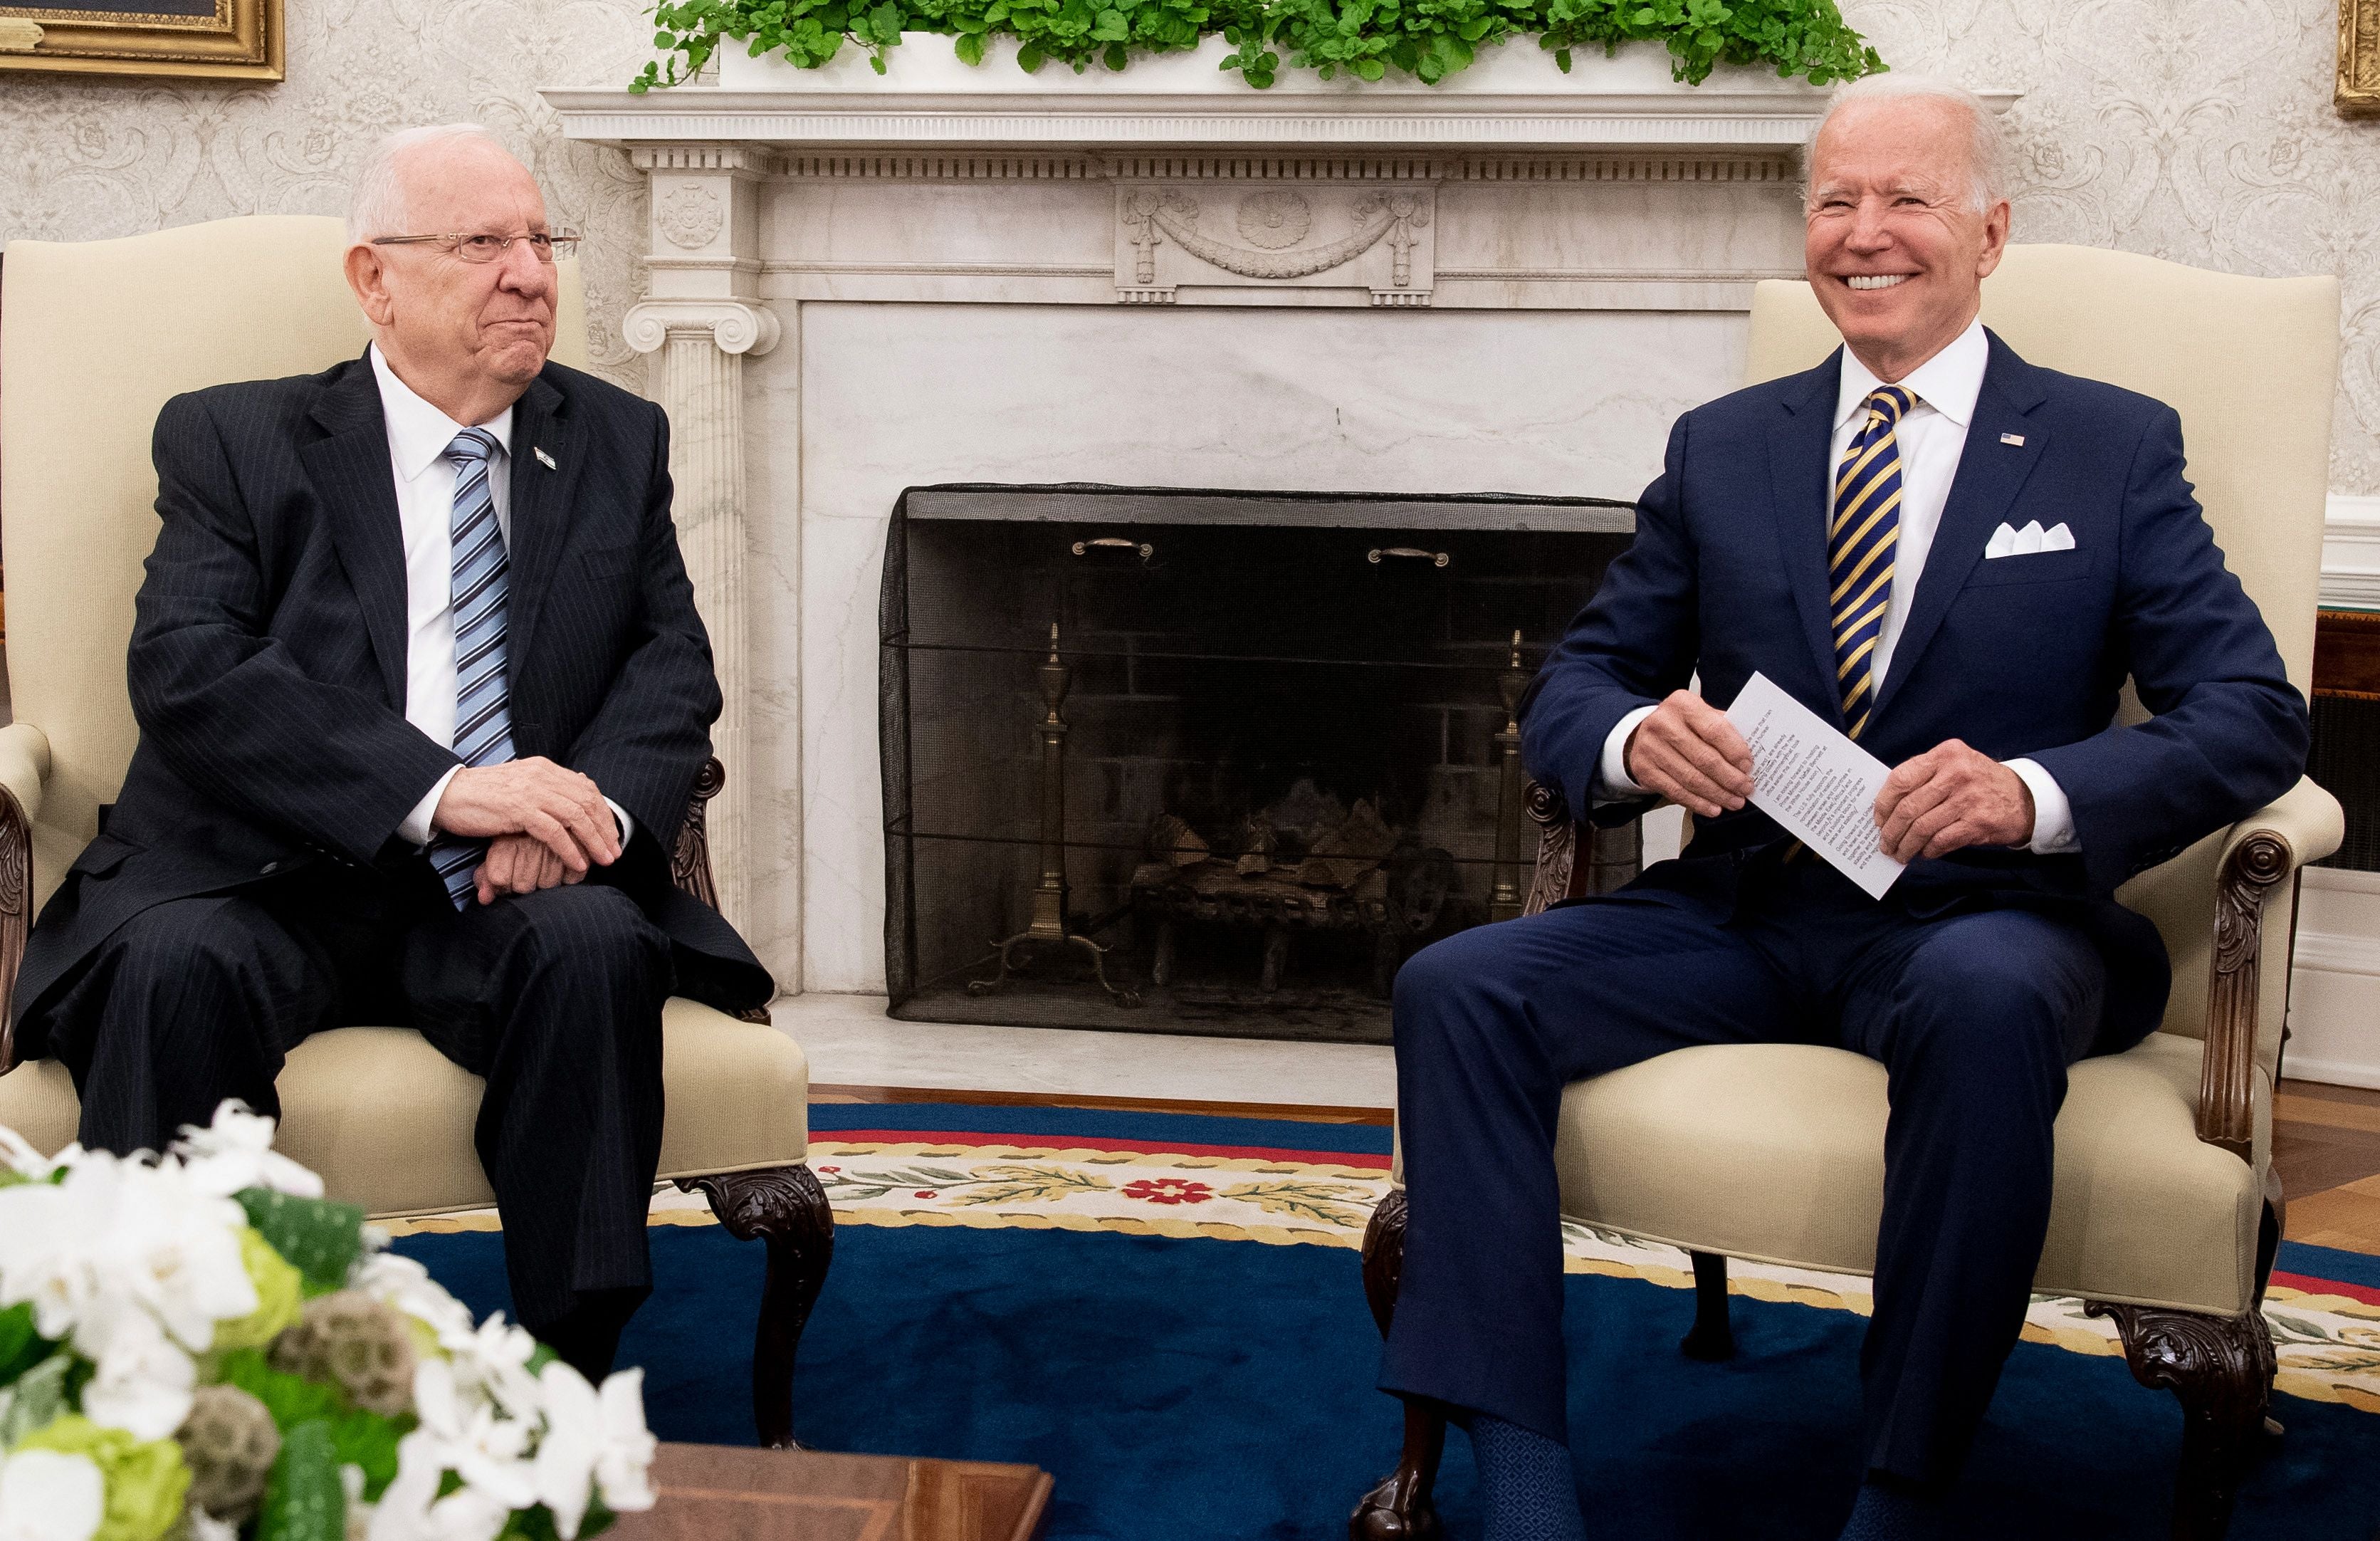 US President Joe Biden meets Israeli President Reuven Rivlin, left, in the Oval Office of the White House on Monday